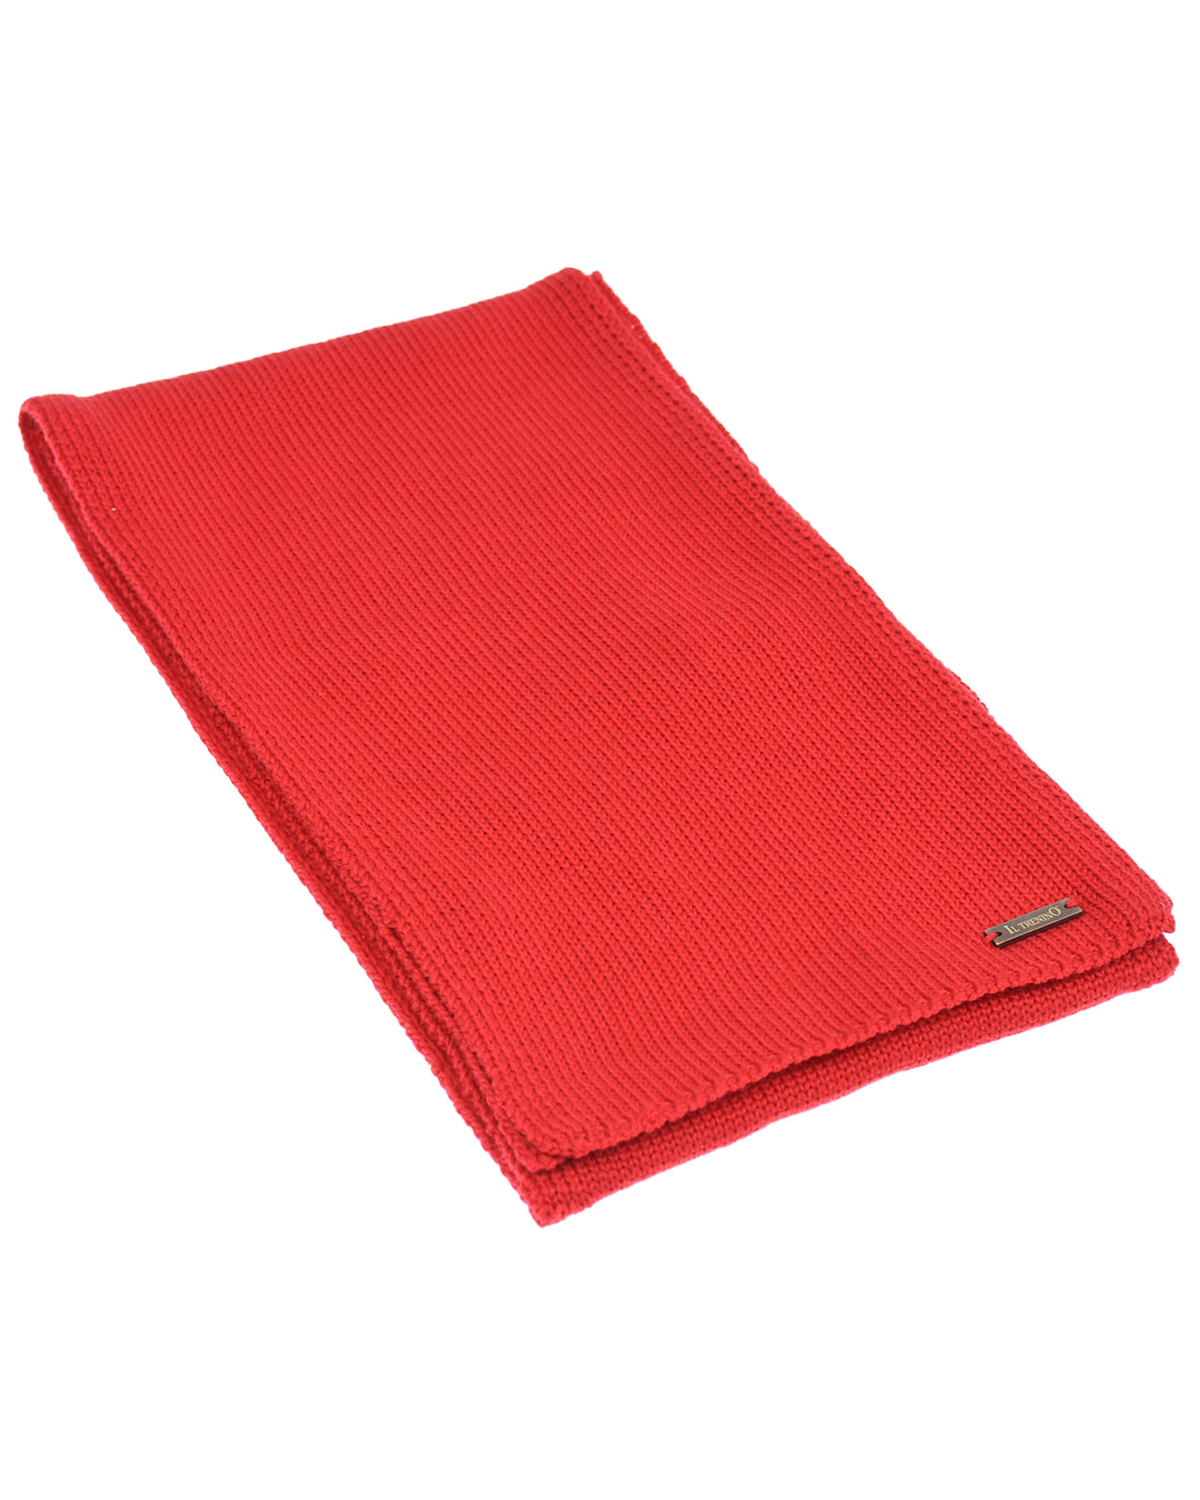 Красный шерстяной шарф, 140x19 см Il Trenino детский, размер unica - фото 1